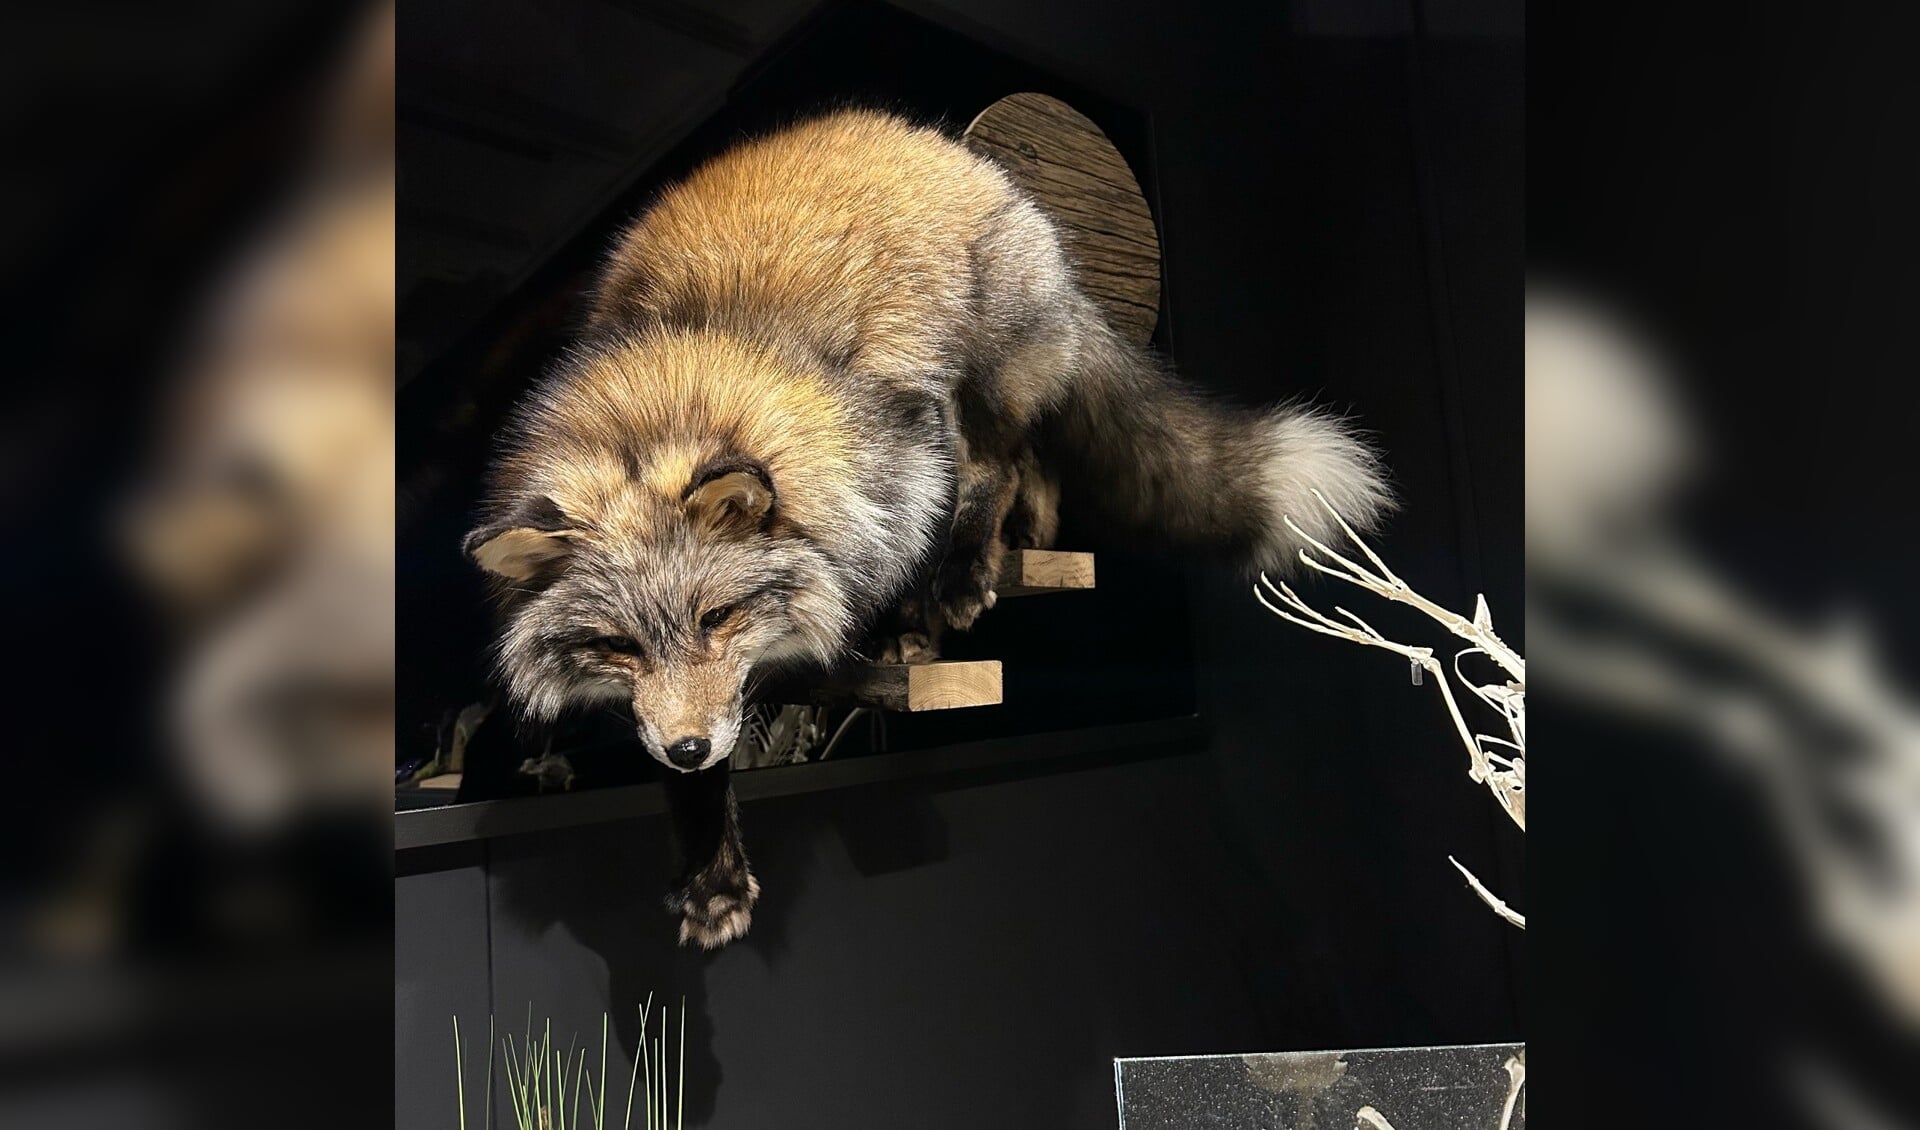 De vos van Rikie Hamer viel meermaals in de prijzen, zowel de jury als de bezoekers van het Natuurmuseum waren onder de indruk van de opgezette vos.